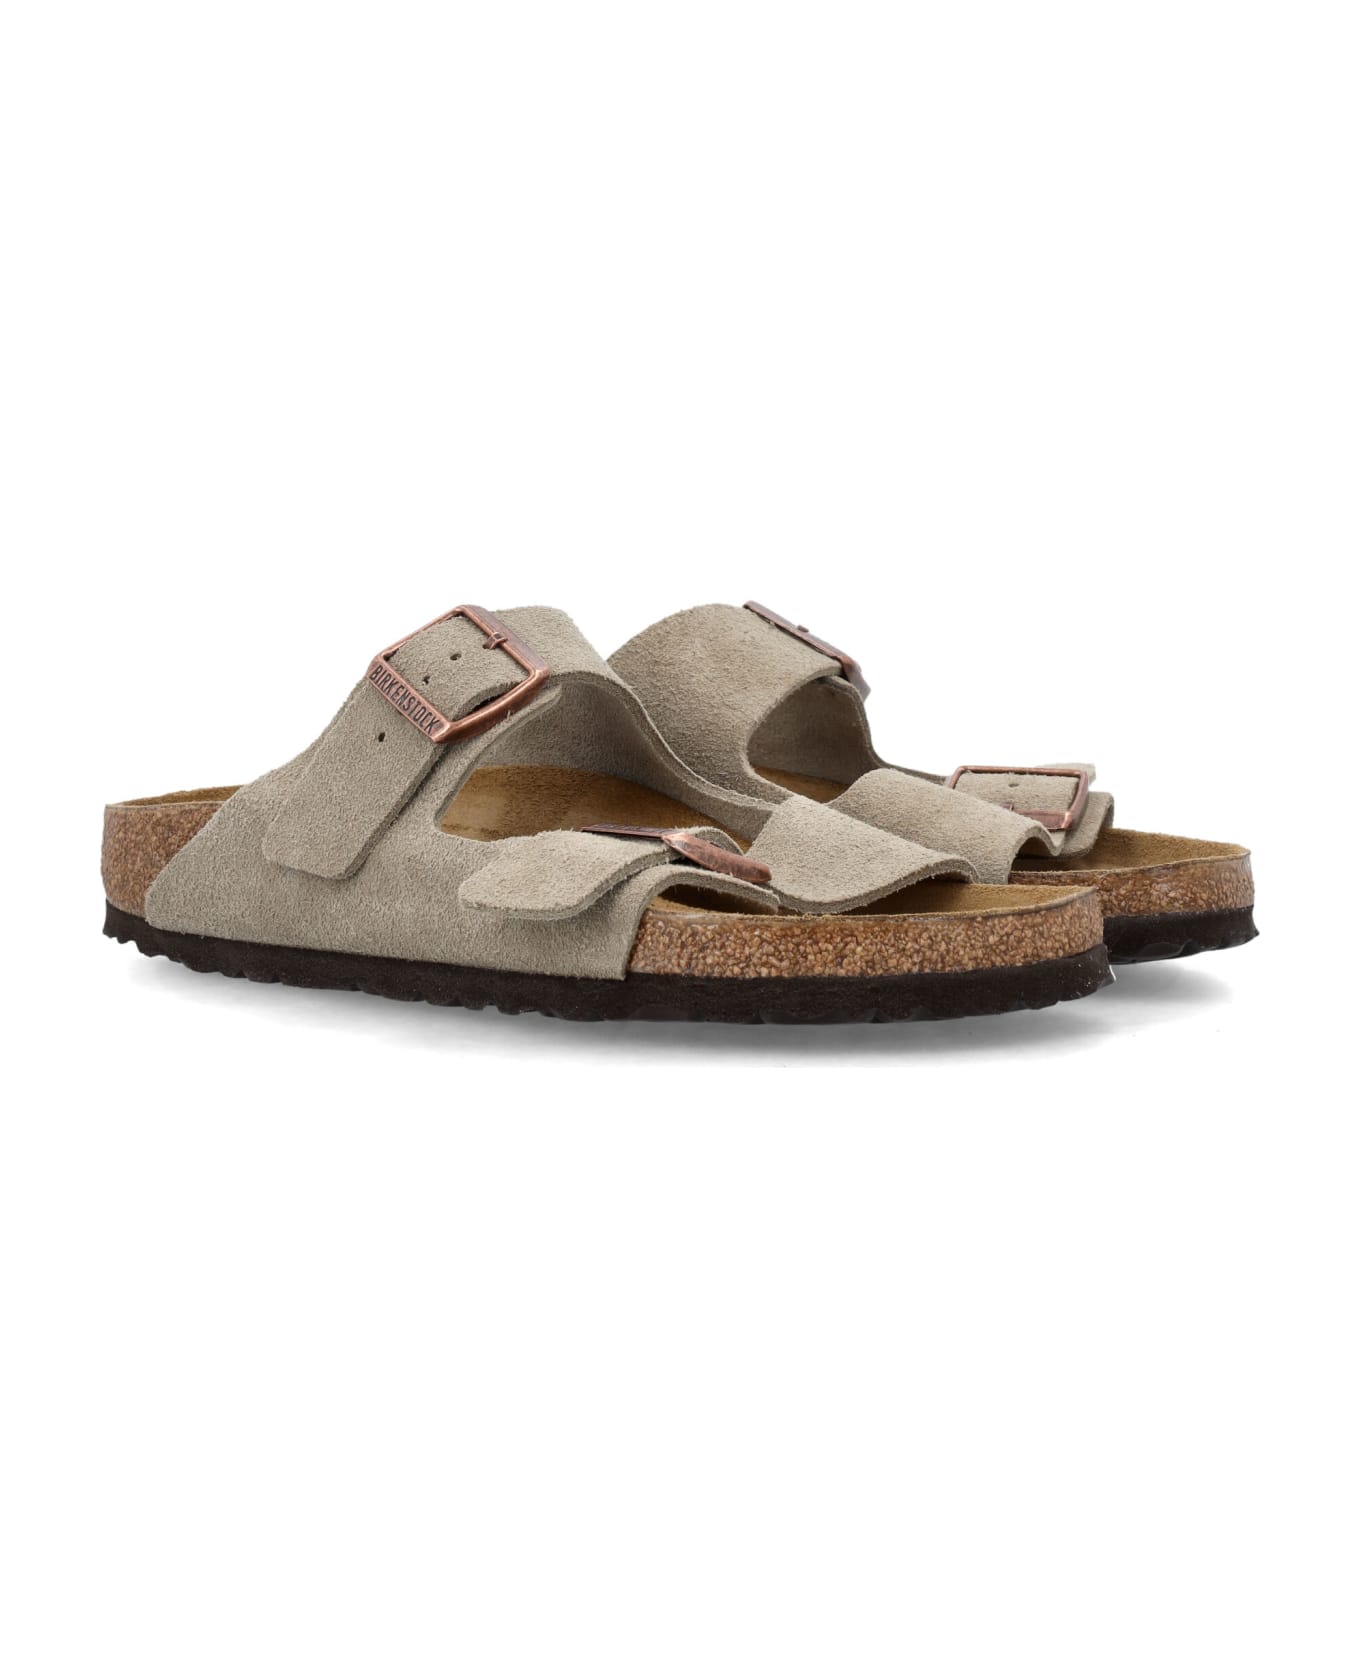 Birkenstock Arizona Suede Sandals - NEUTRALS